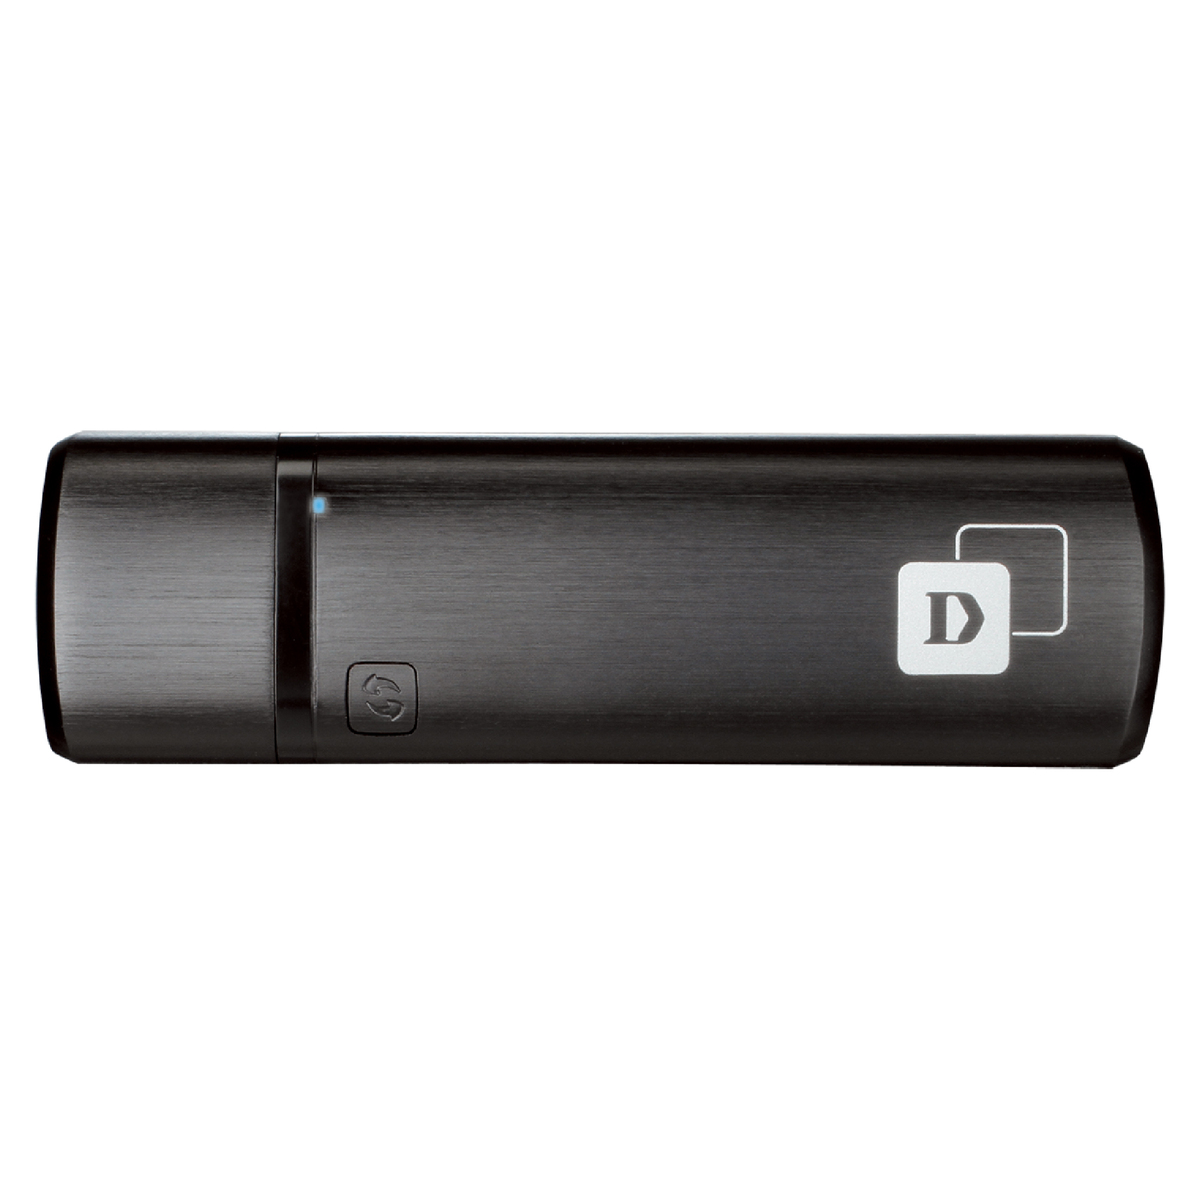 D Link Wireless AC1300 MU-MIMO Wi-Fi USB Adapter DWA-182